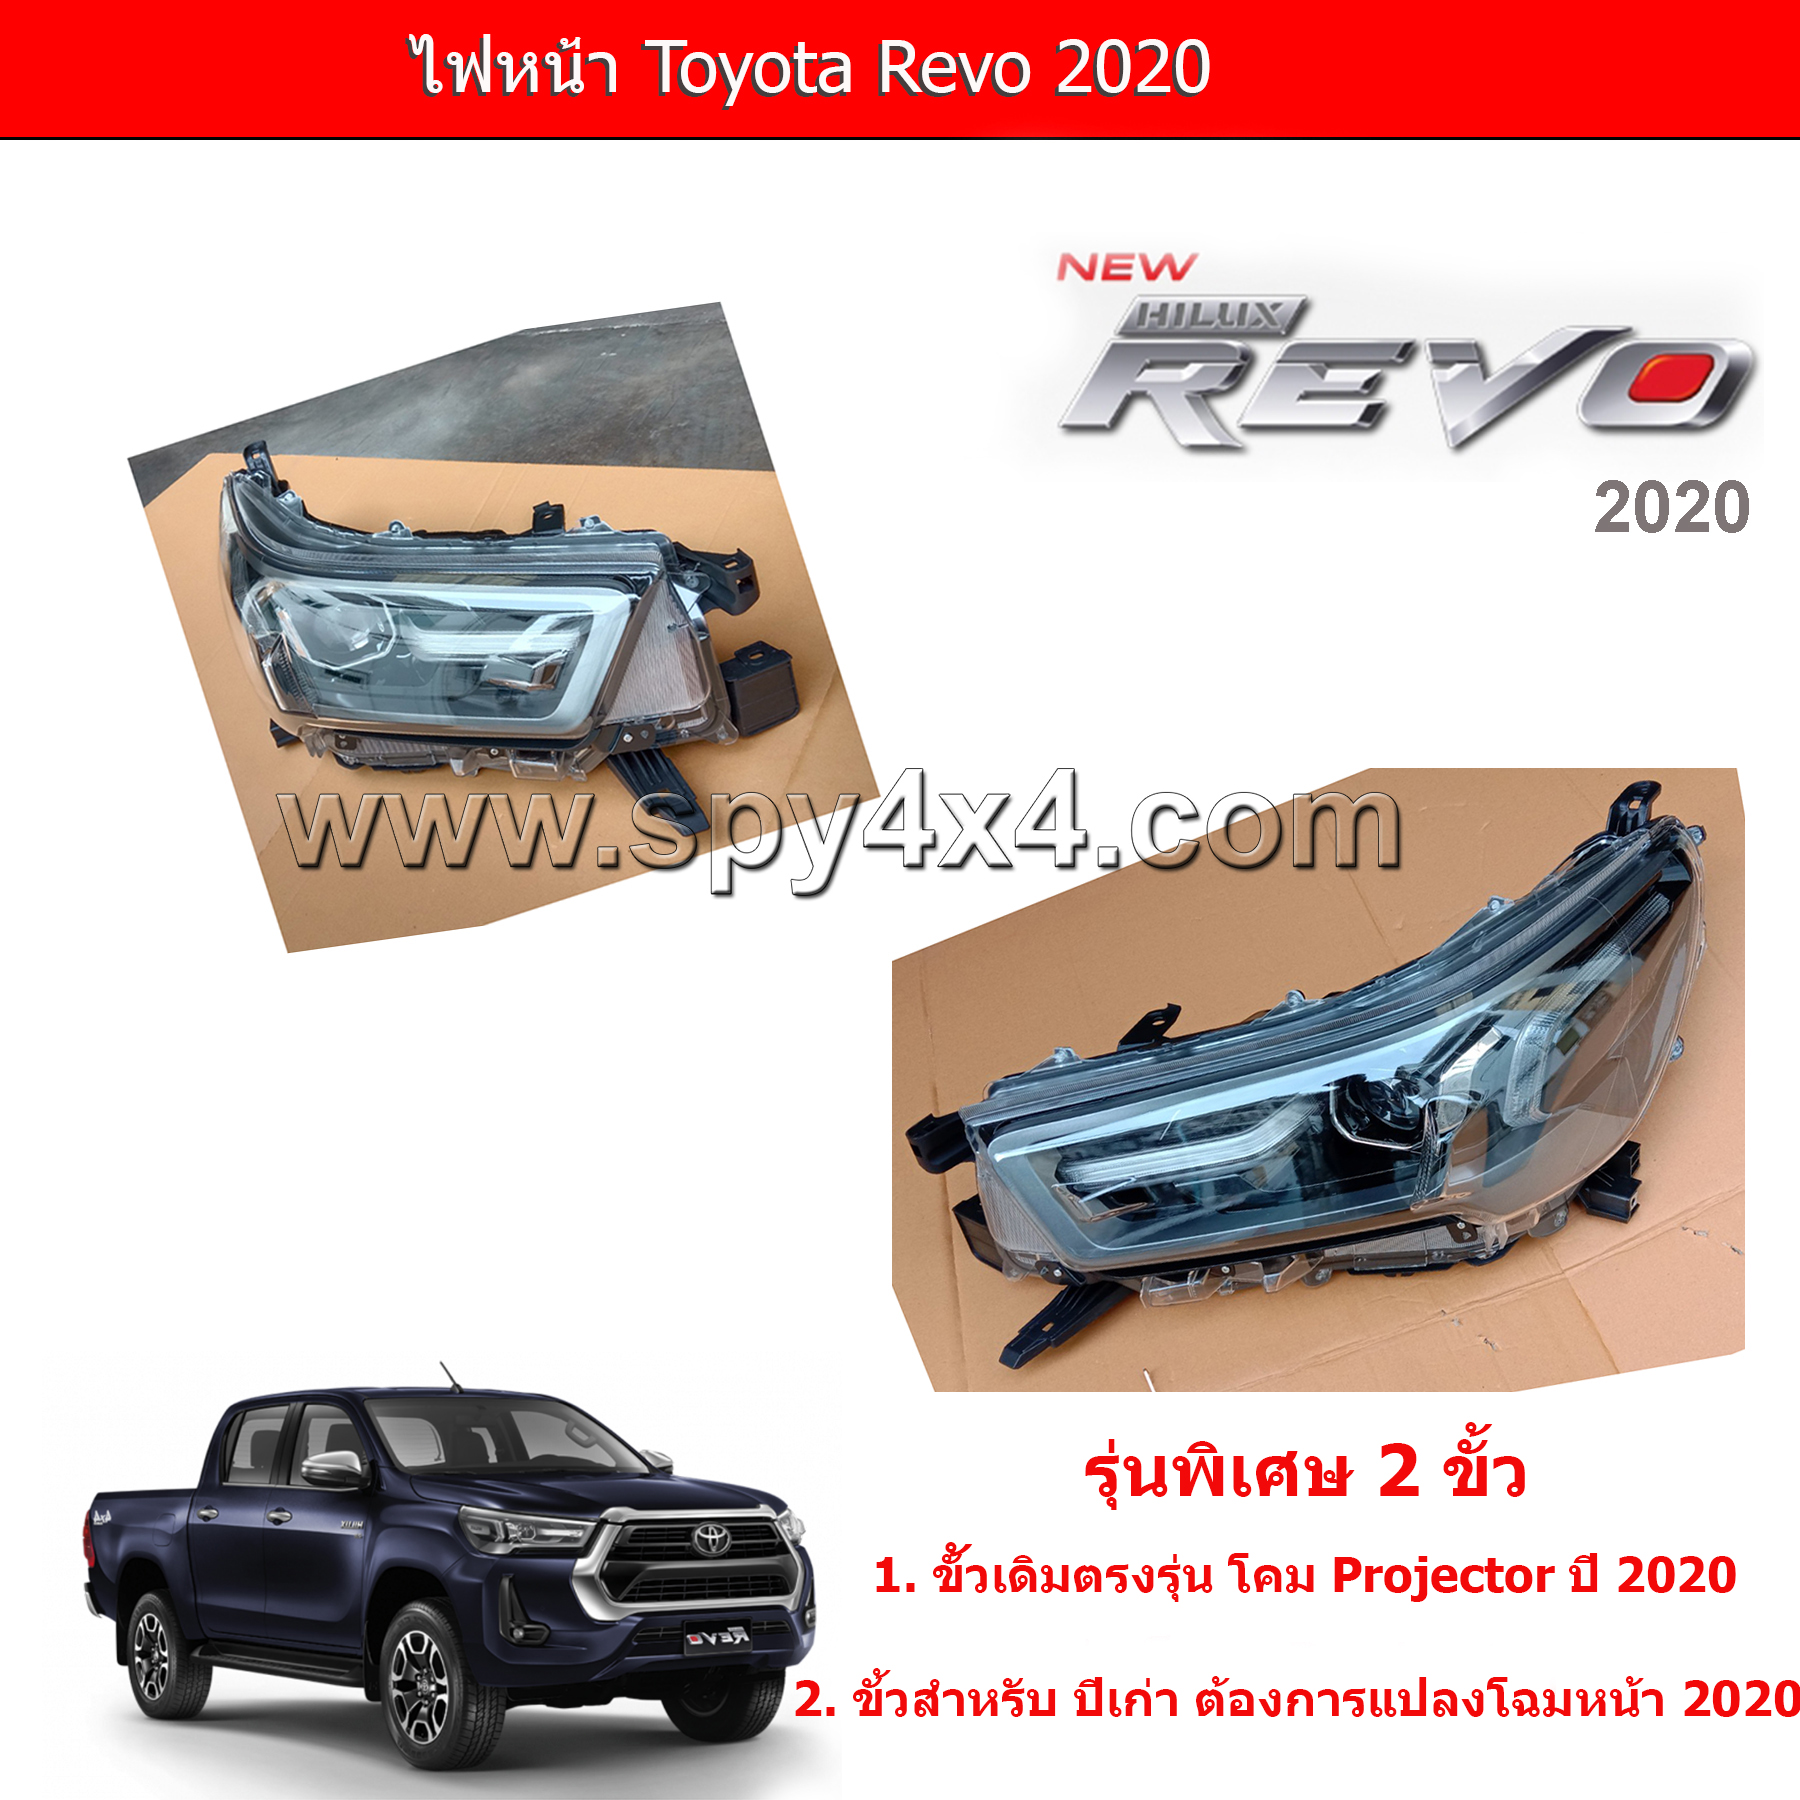 ไฟหน้า Toyota Revo 2020 Projector 1คู่ ซ้าย - ขวา (พร้อมปลั๊กแปลง 2015Pro to 2020Pro)